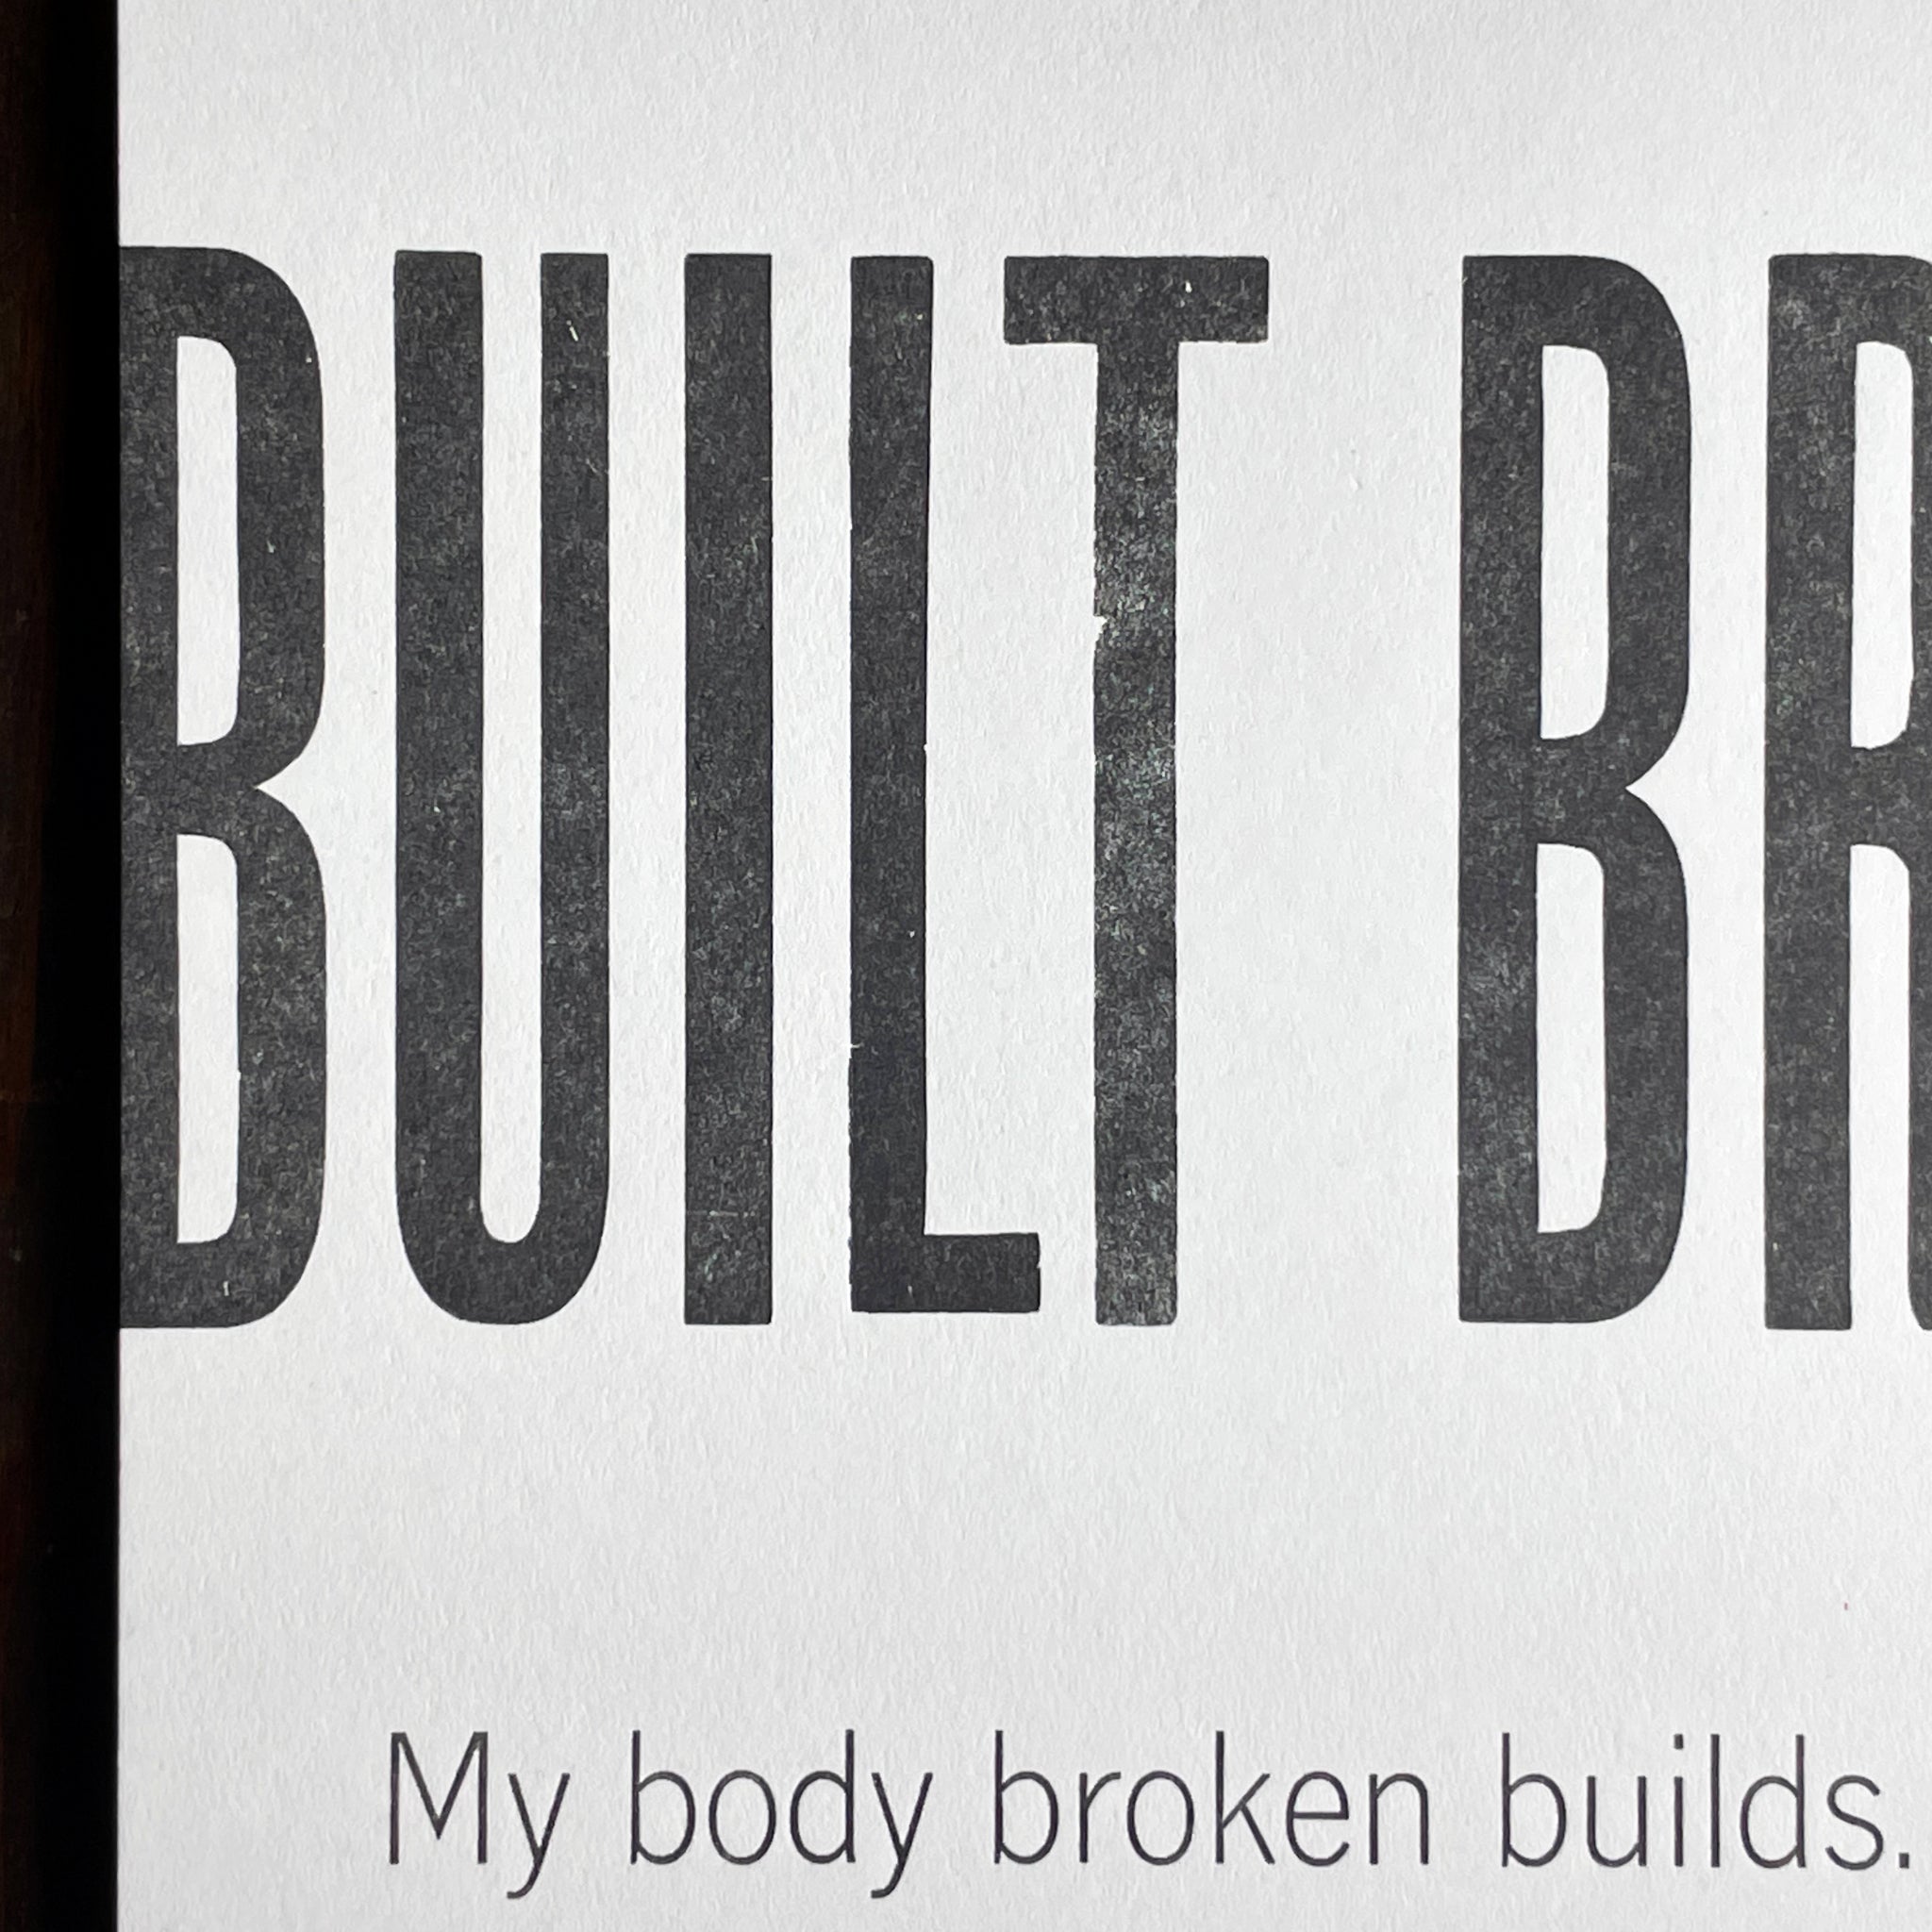 Built Broken